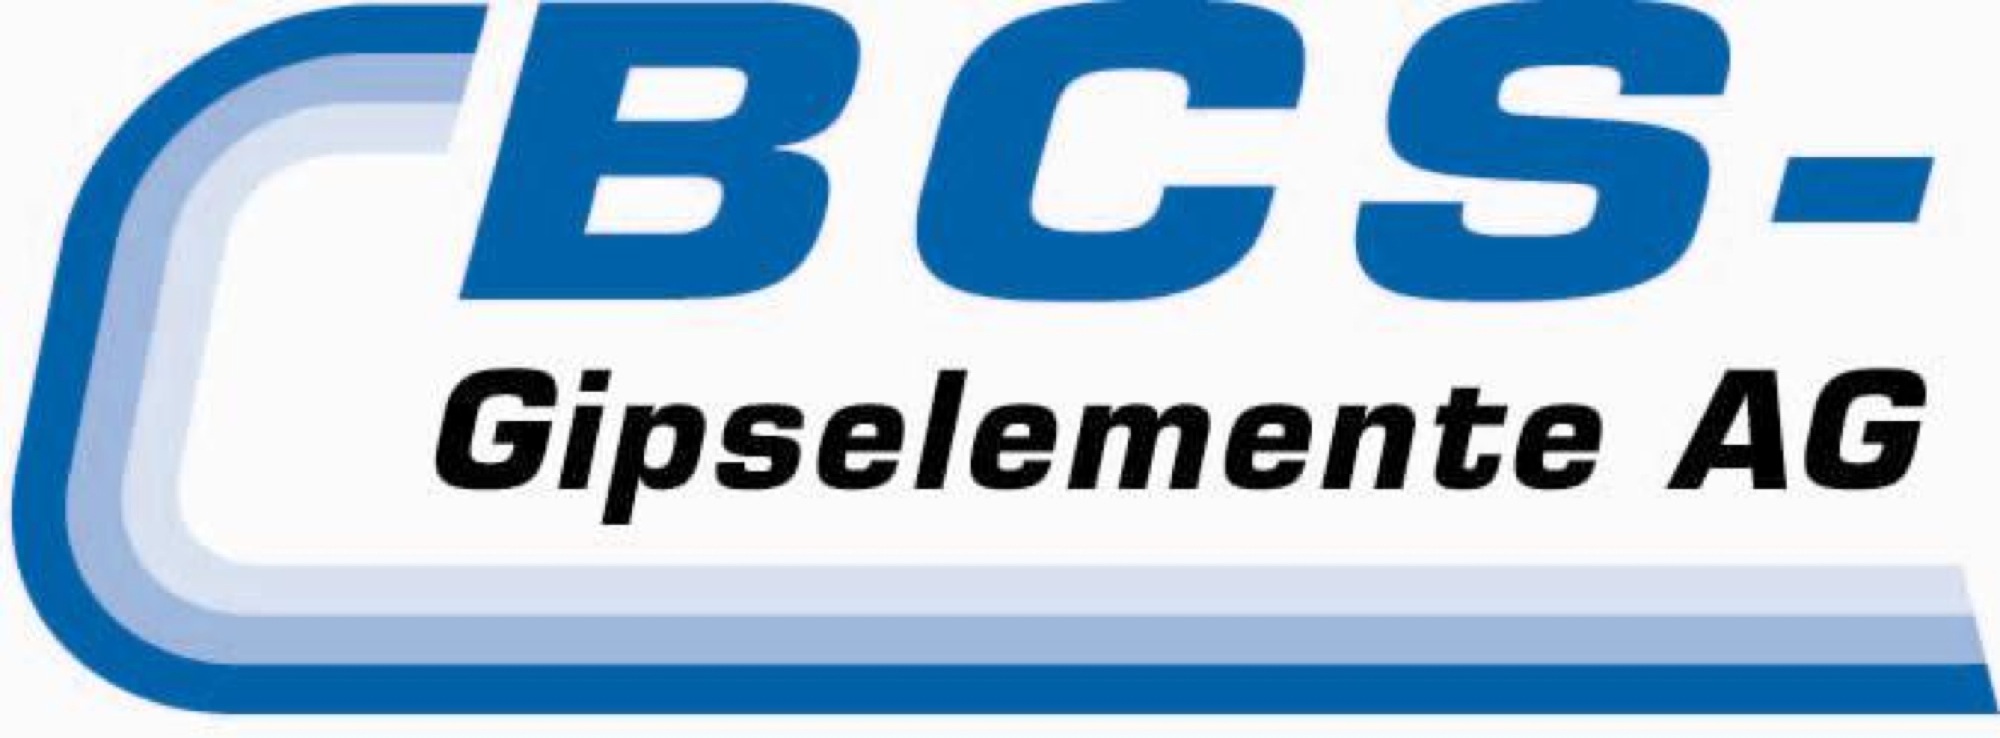 BCS-Gipselemente AG Logo